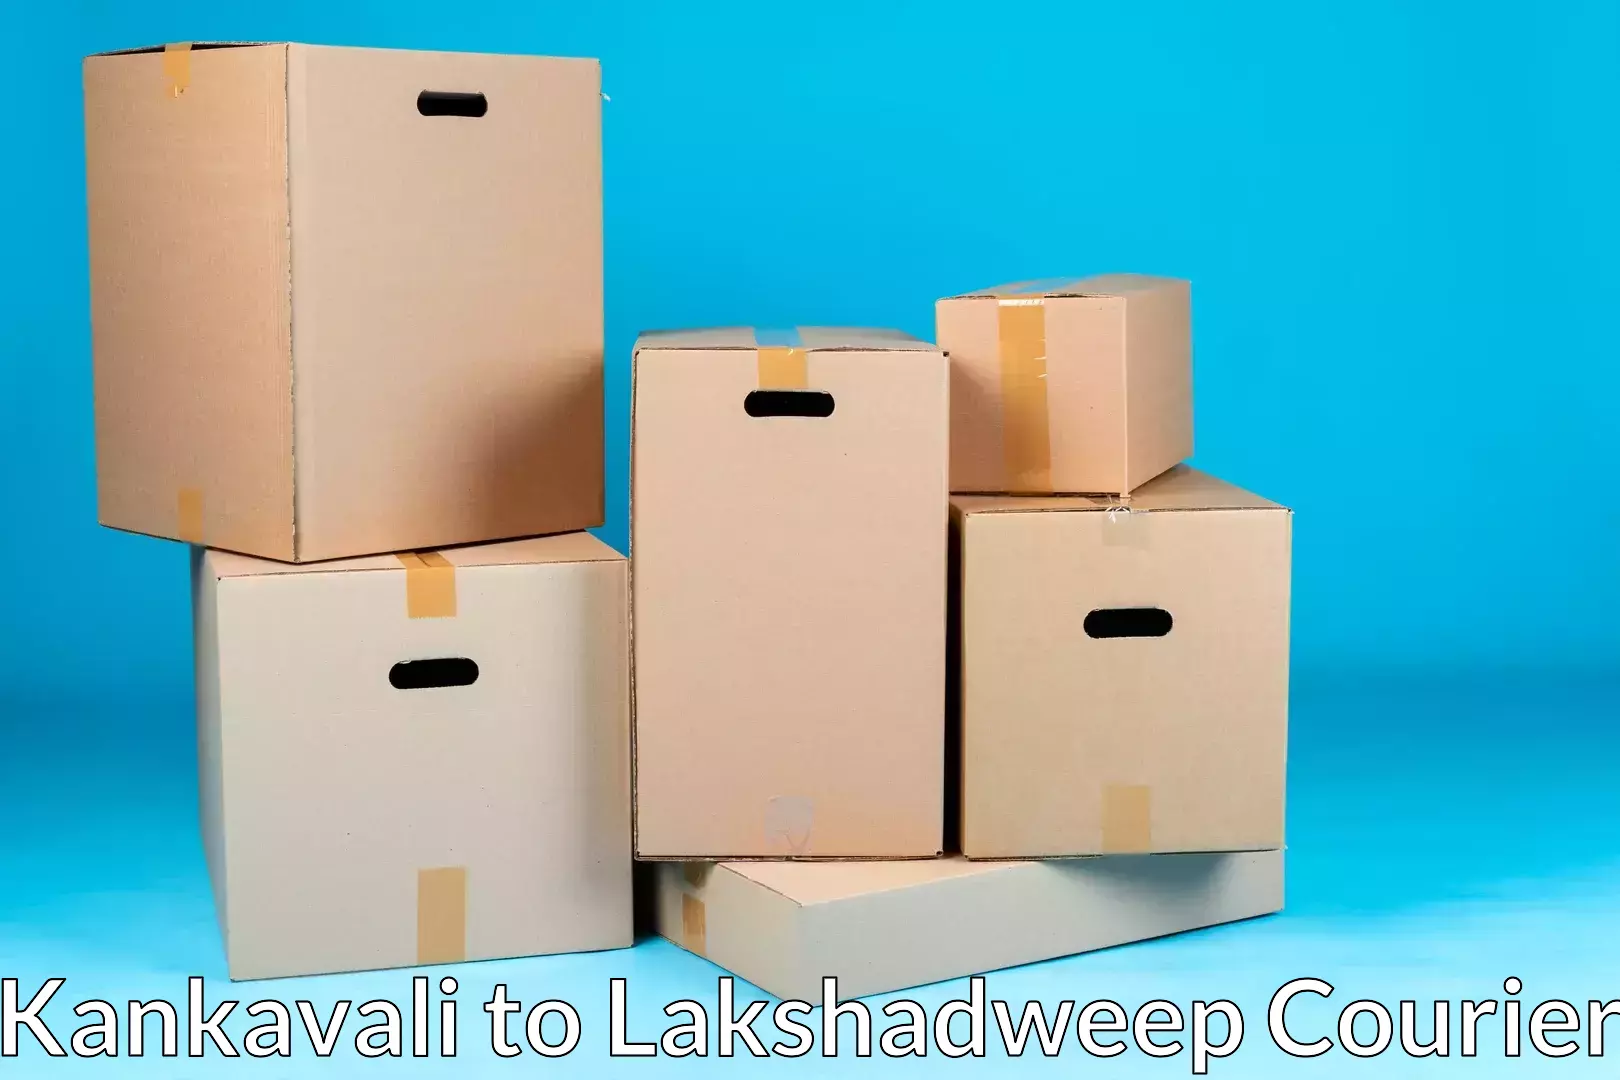 Furniture transport experts Kankavali to Lakshadweep